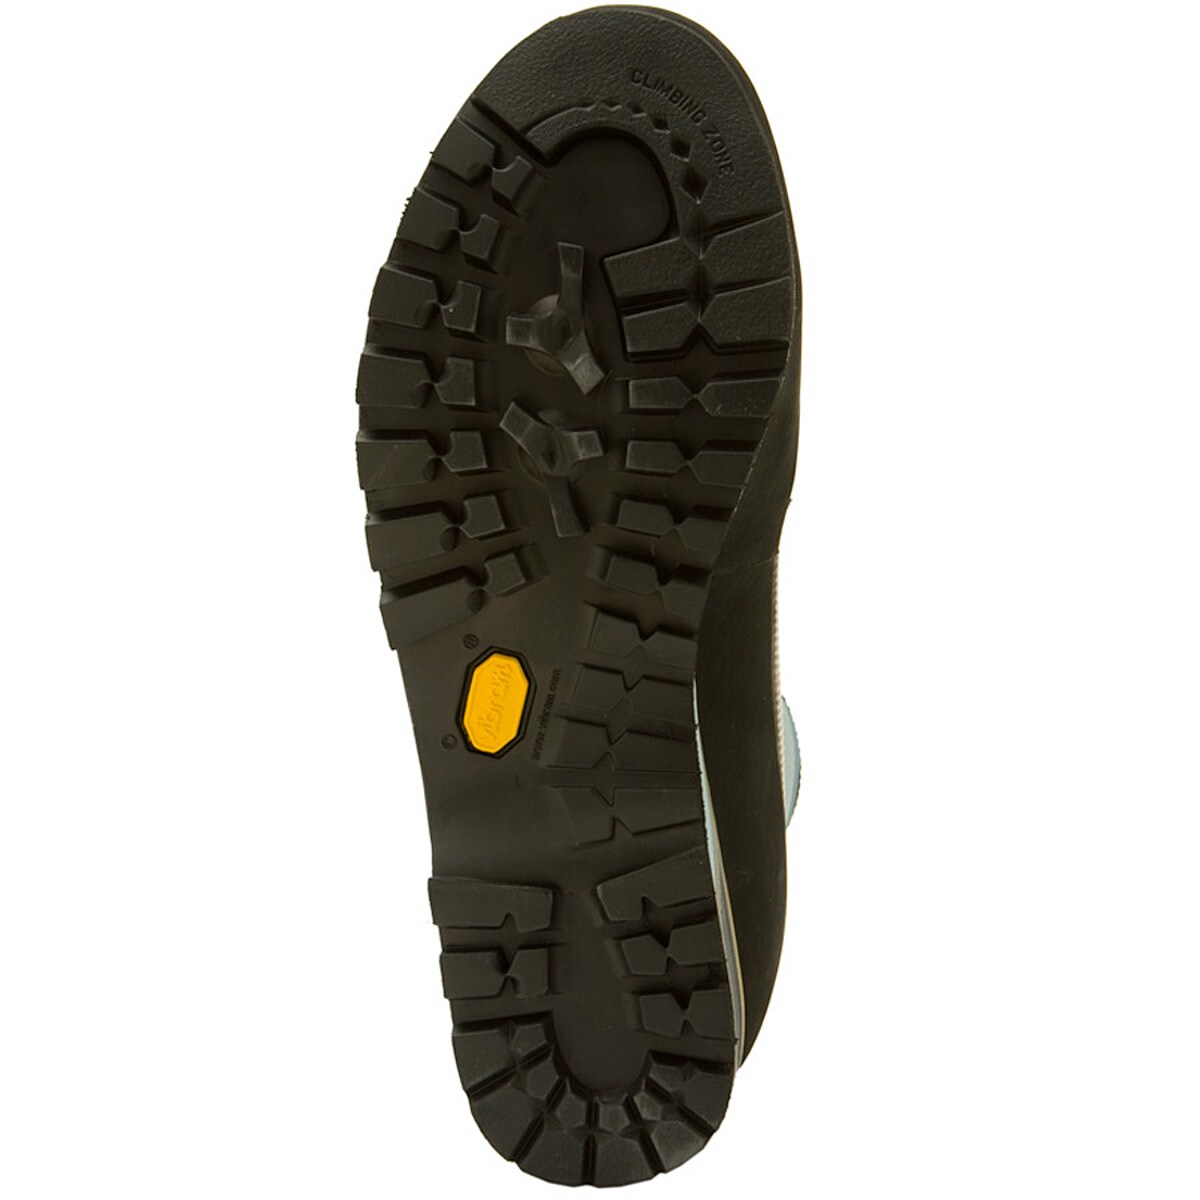 La Sportiva Trango S EVO GTX Mountaineering Boot - Women's - Footwear